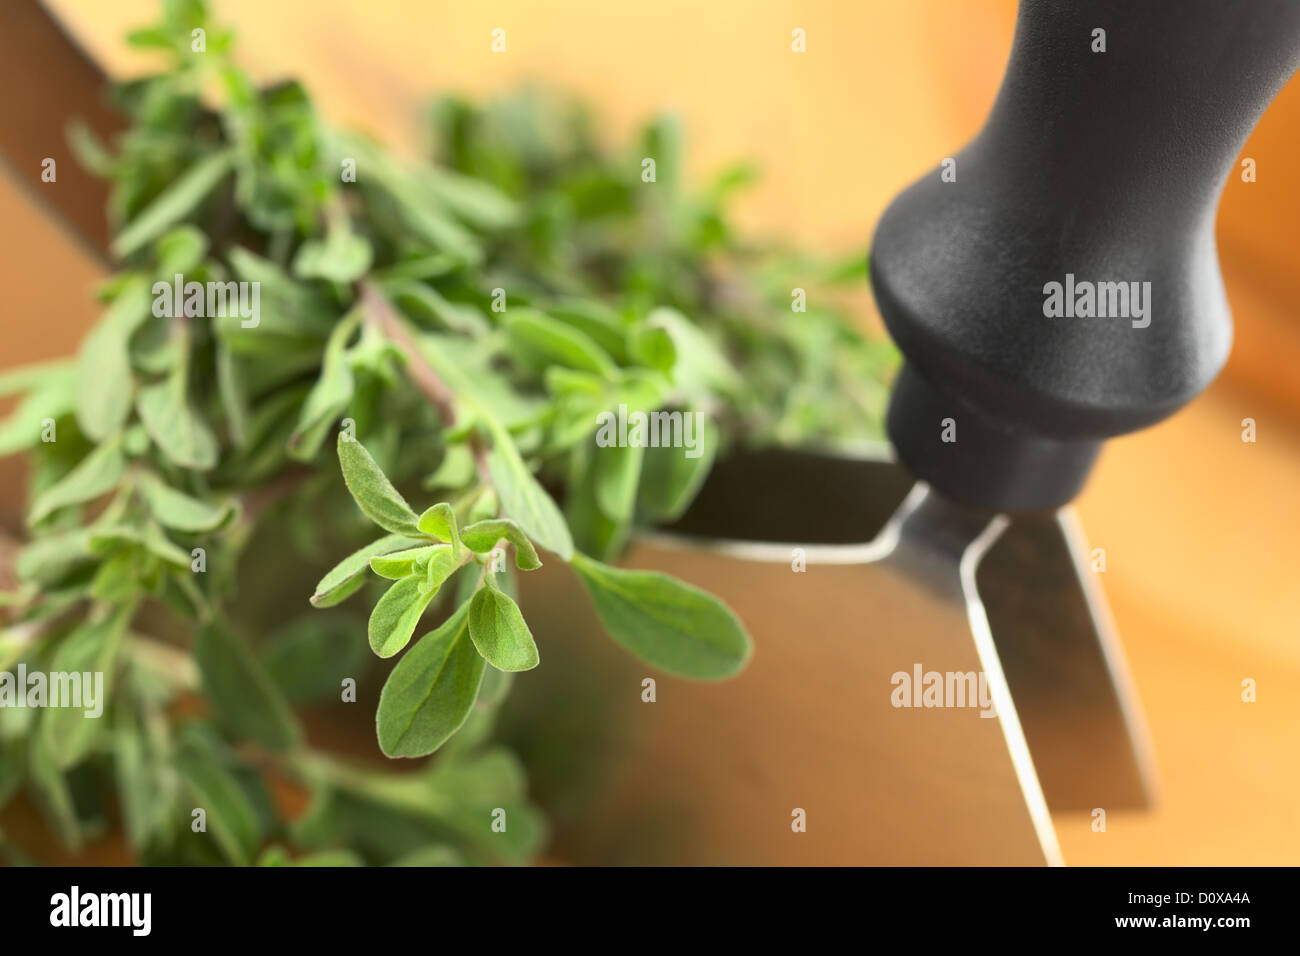 Marjolaine fraîche avec des brindilles mezzaluna sur une planche à découper (Selective Focus, Focus sur la plante dans le coin inférieur gauche) Banque D'Images